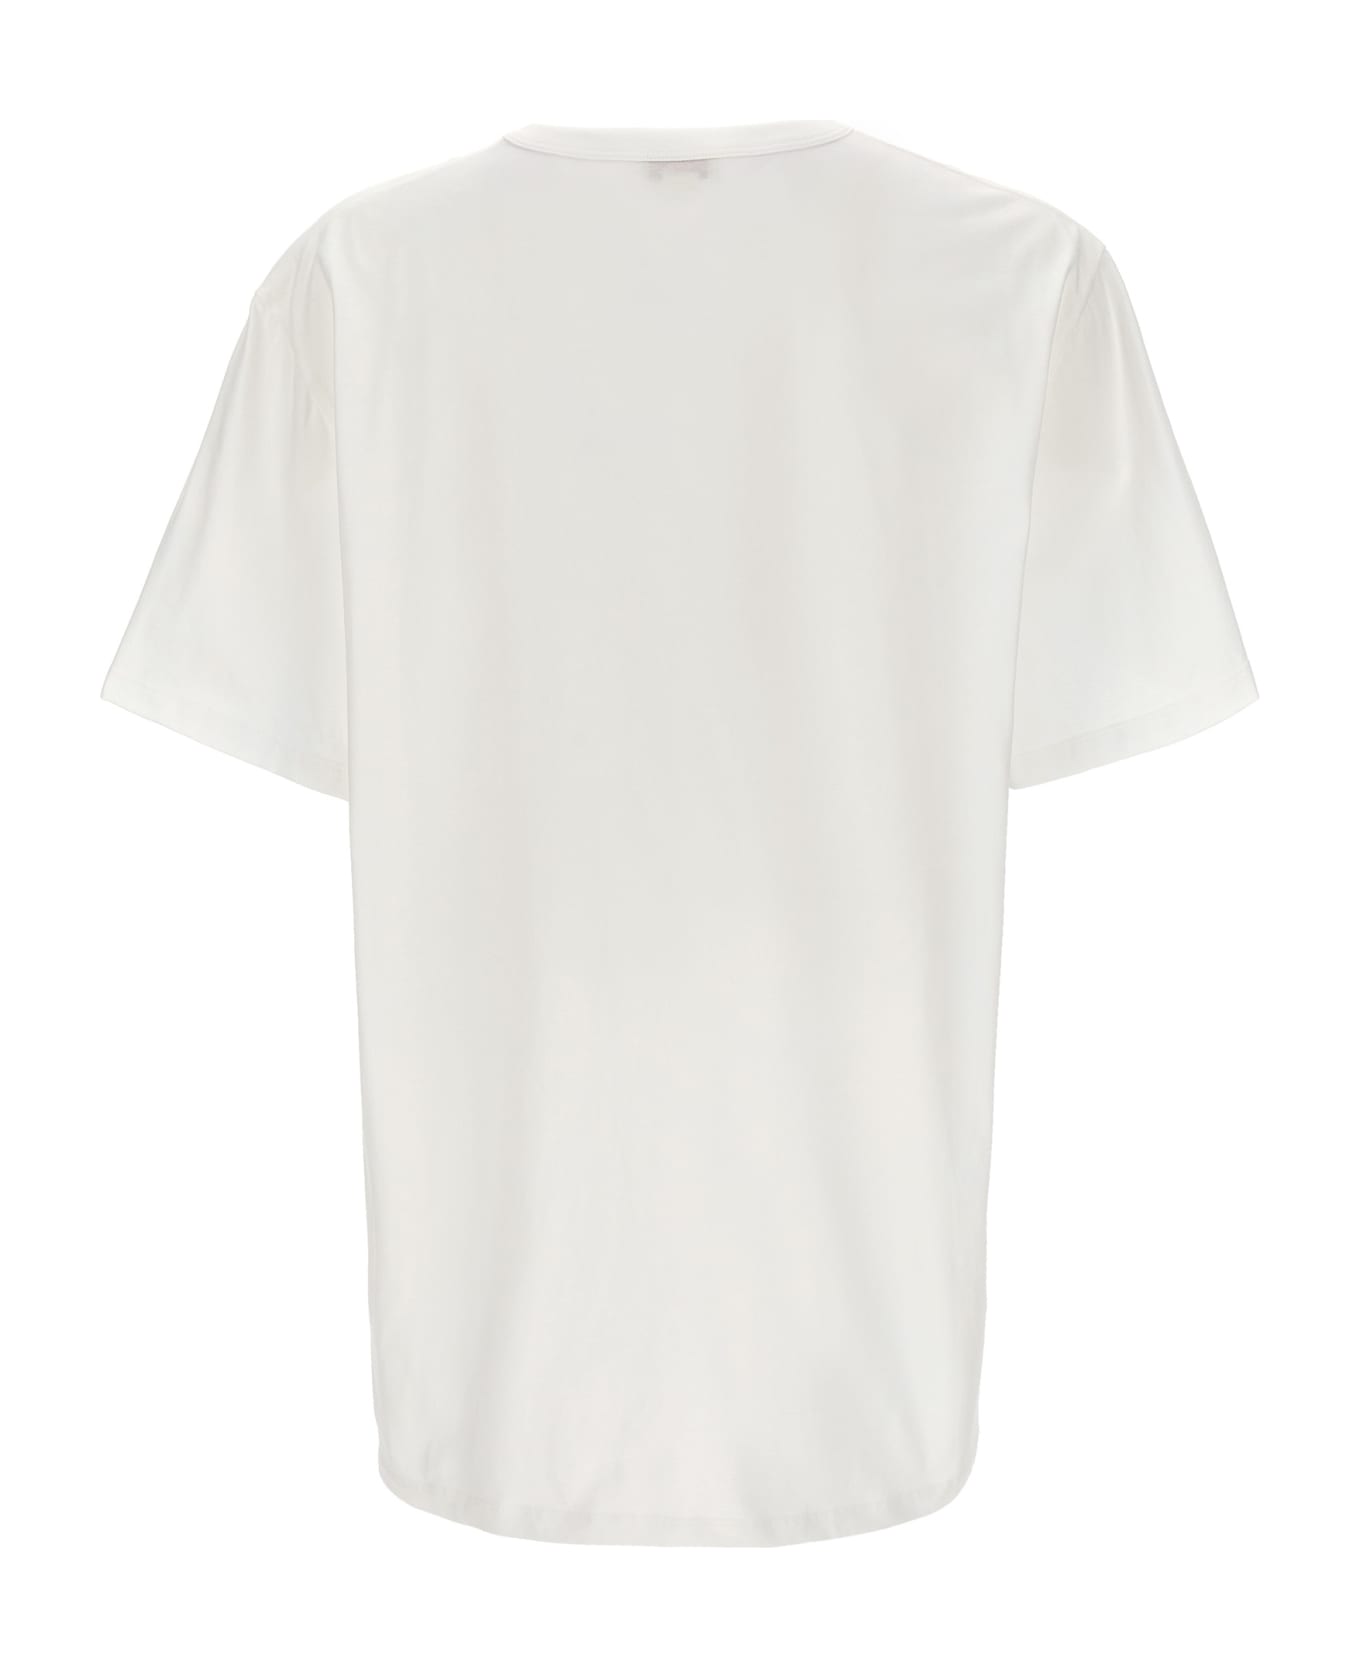 Alexander McQueen Skull Print T-shirt - WHITE